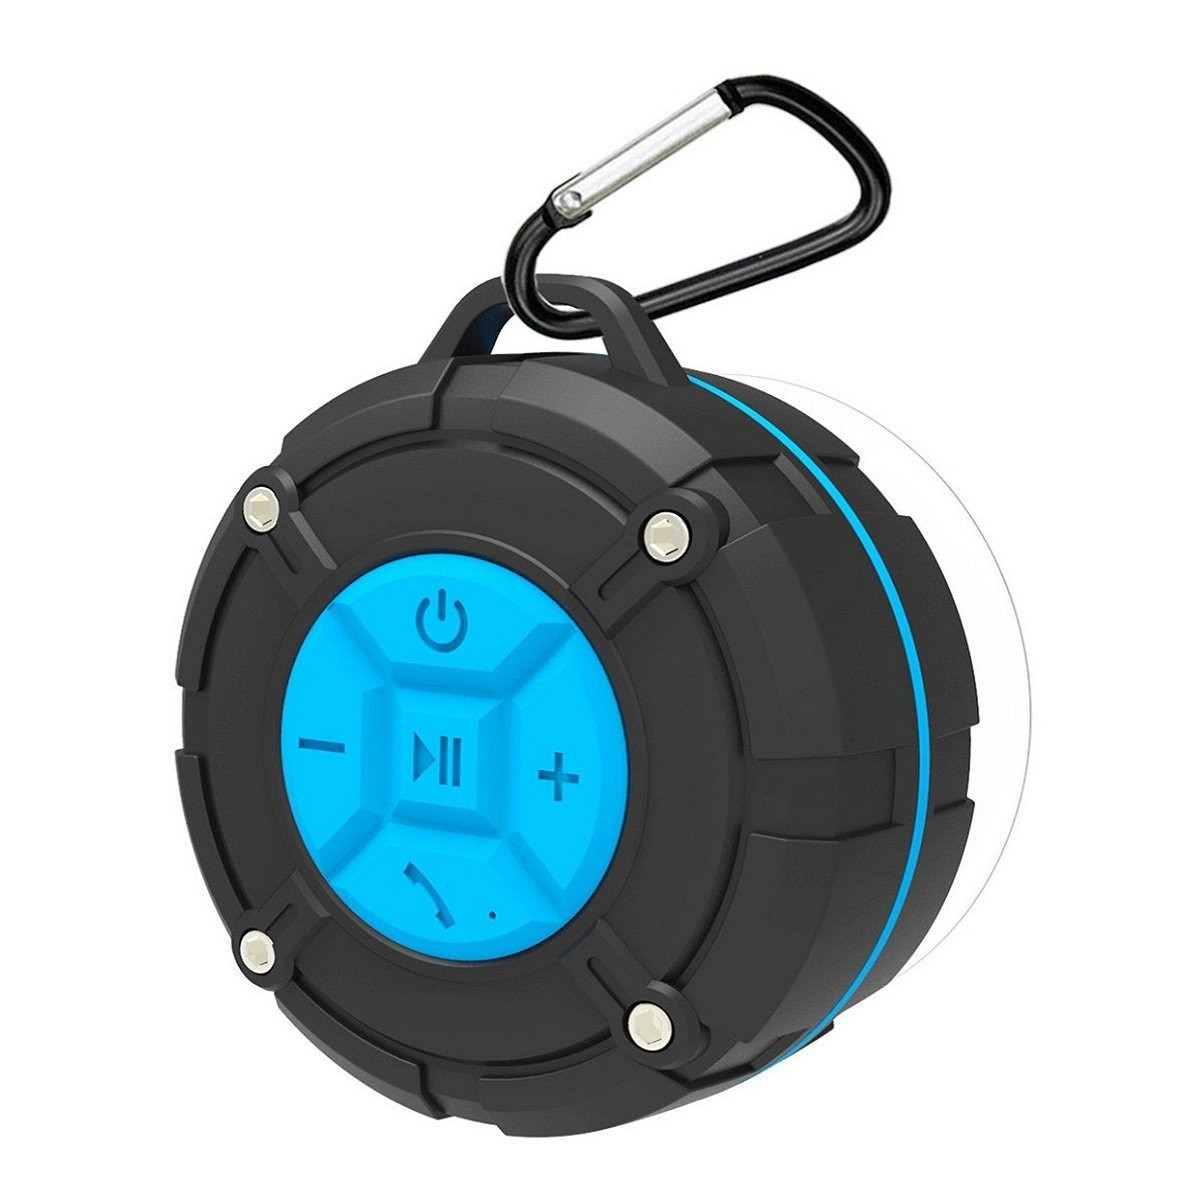 

Mini Portable Wireless bluetooth Speaker IPX7 Waterproof Sucker Outdoors Bass Speaker